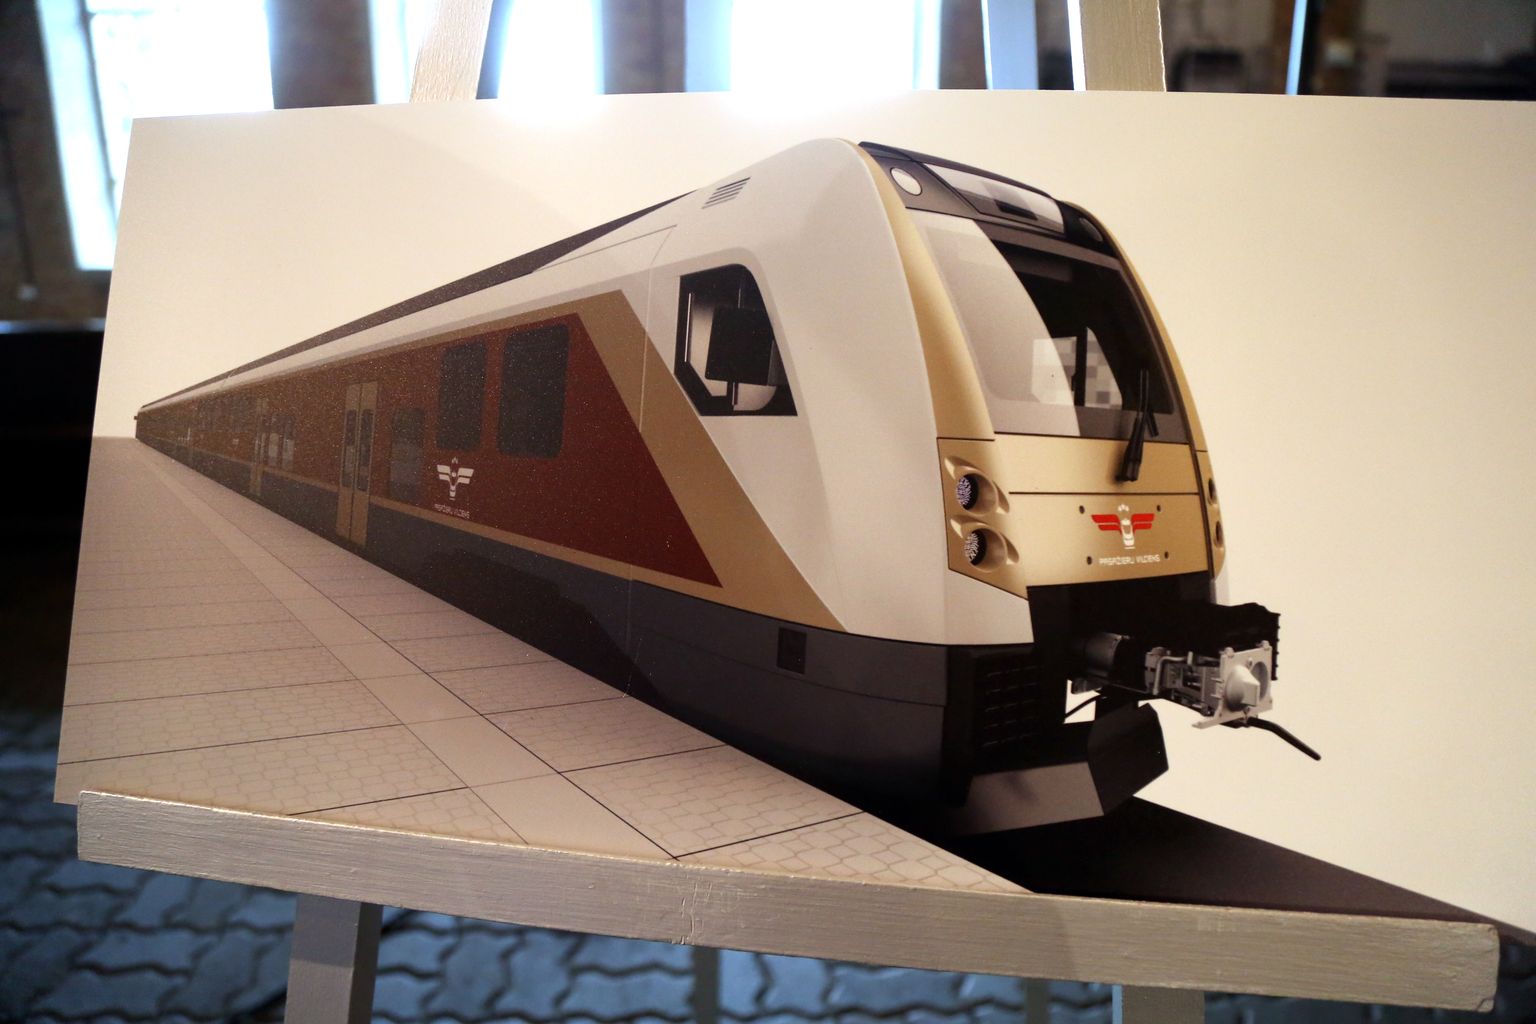 Latvijas Dzelzceļa vēstures muzejā notiek pasākums, kurā AS "Pasažieru vilciens" un "Škoda Vagonka" vadība paraksta līgumu par jaunu elektrovilcienu piegādi, kas Latvijā sāks kursēt 2022.gada pirmajā pusē.